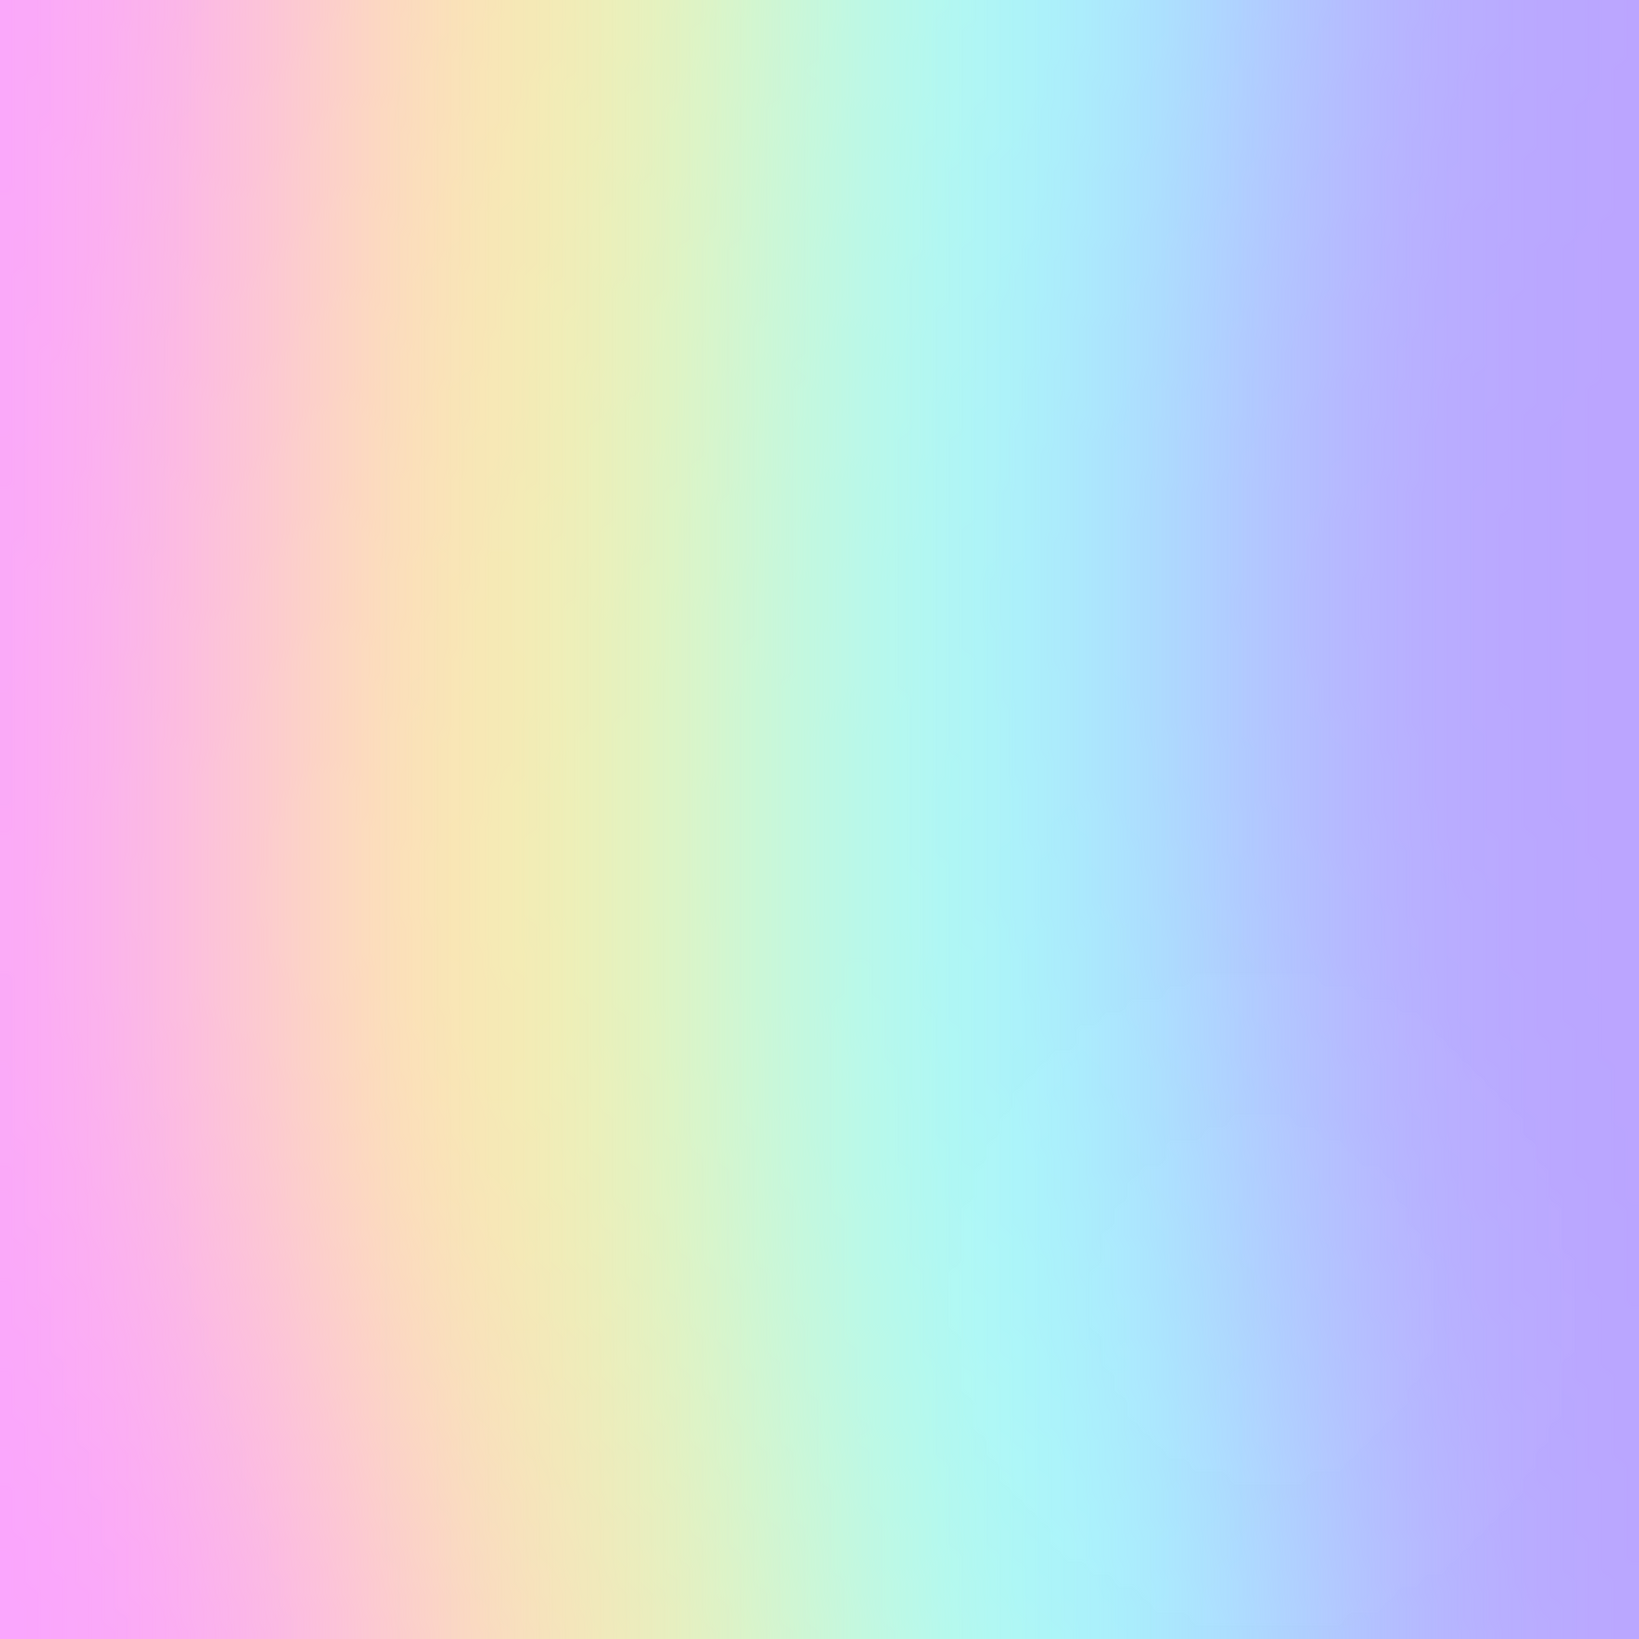 Soft pastel rainbow gradient background